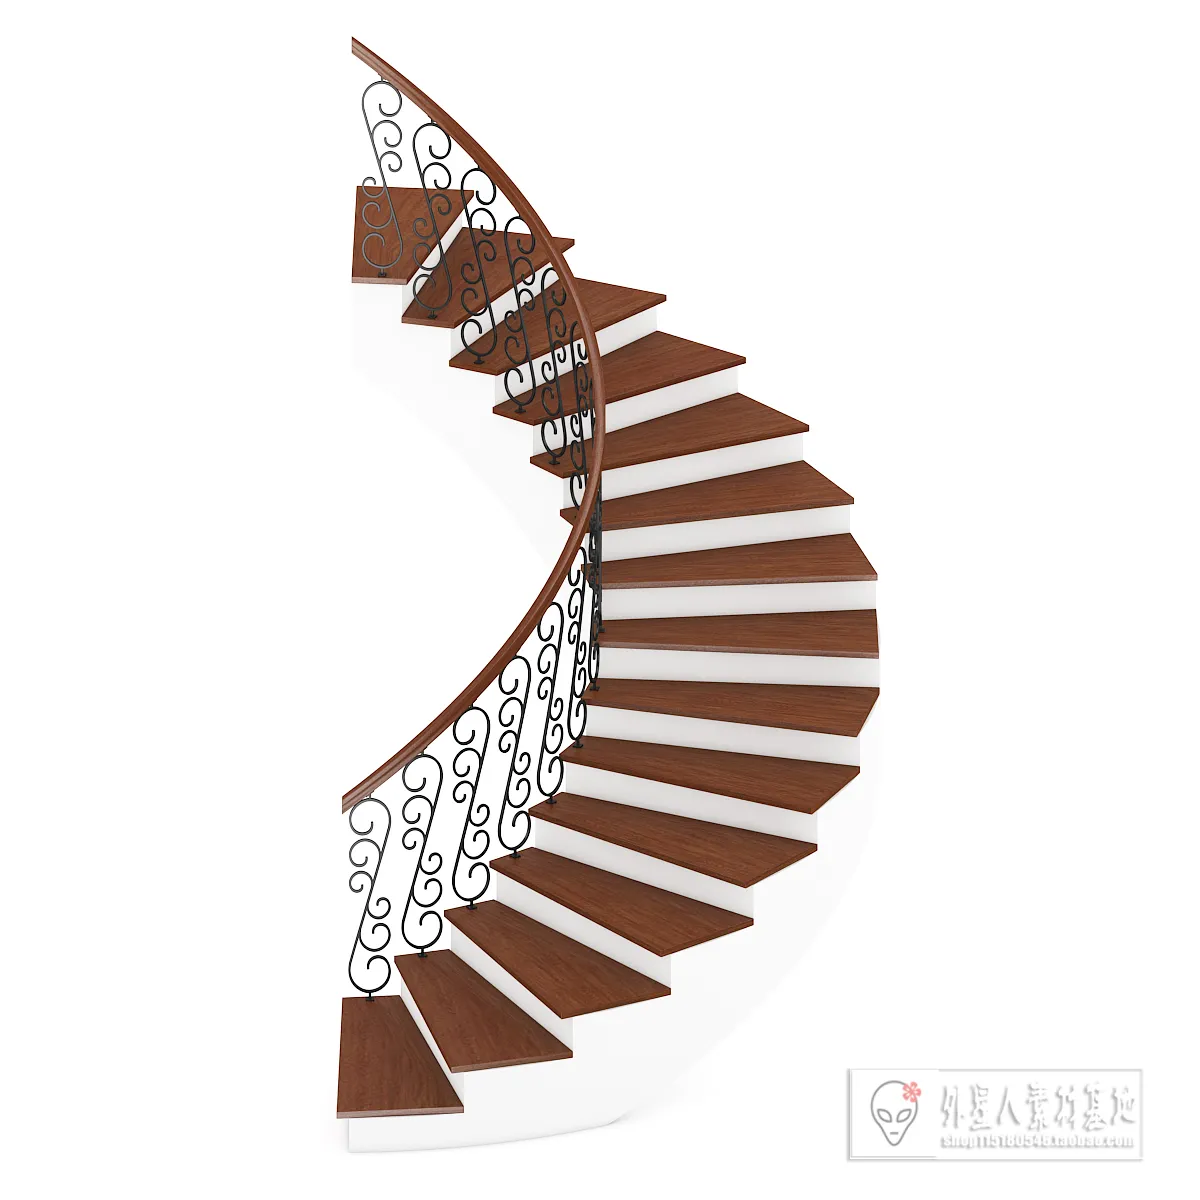 3DSKY PRO MODELS – STAIR 3D MODELS – 005